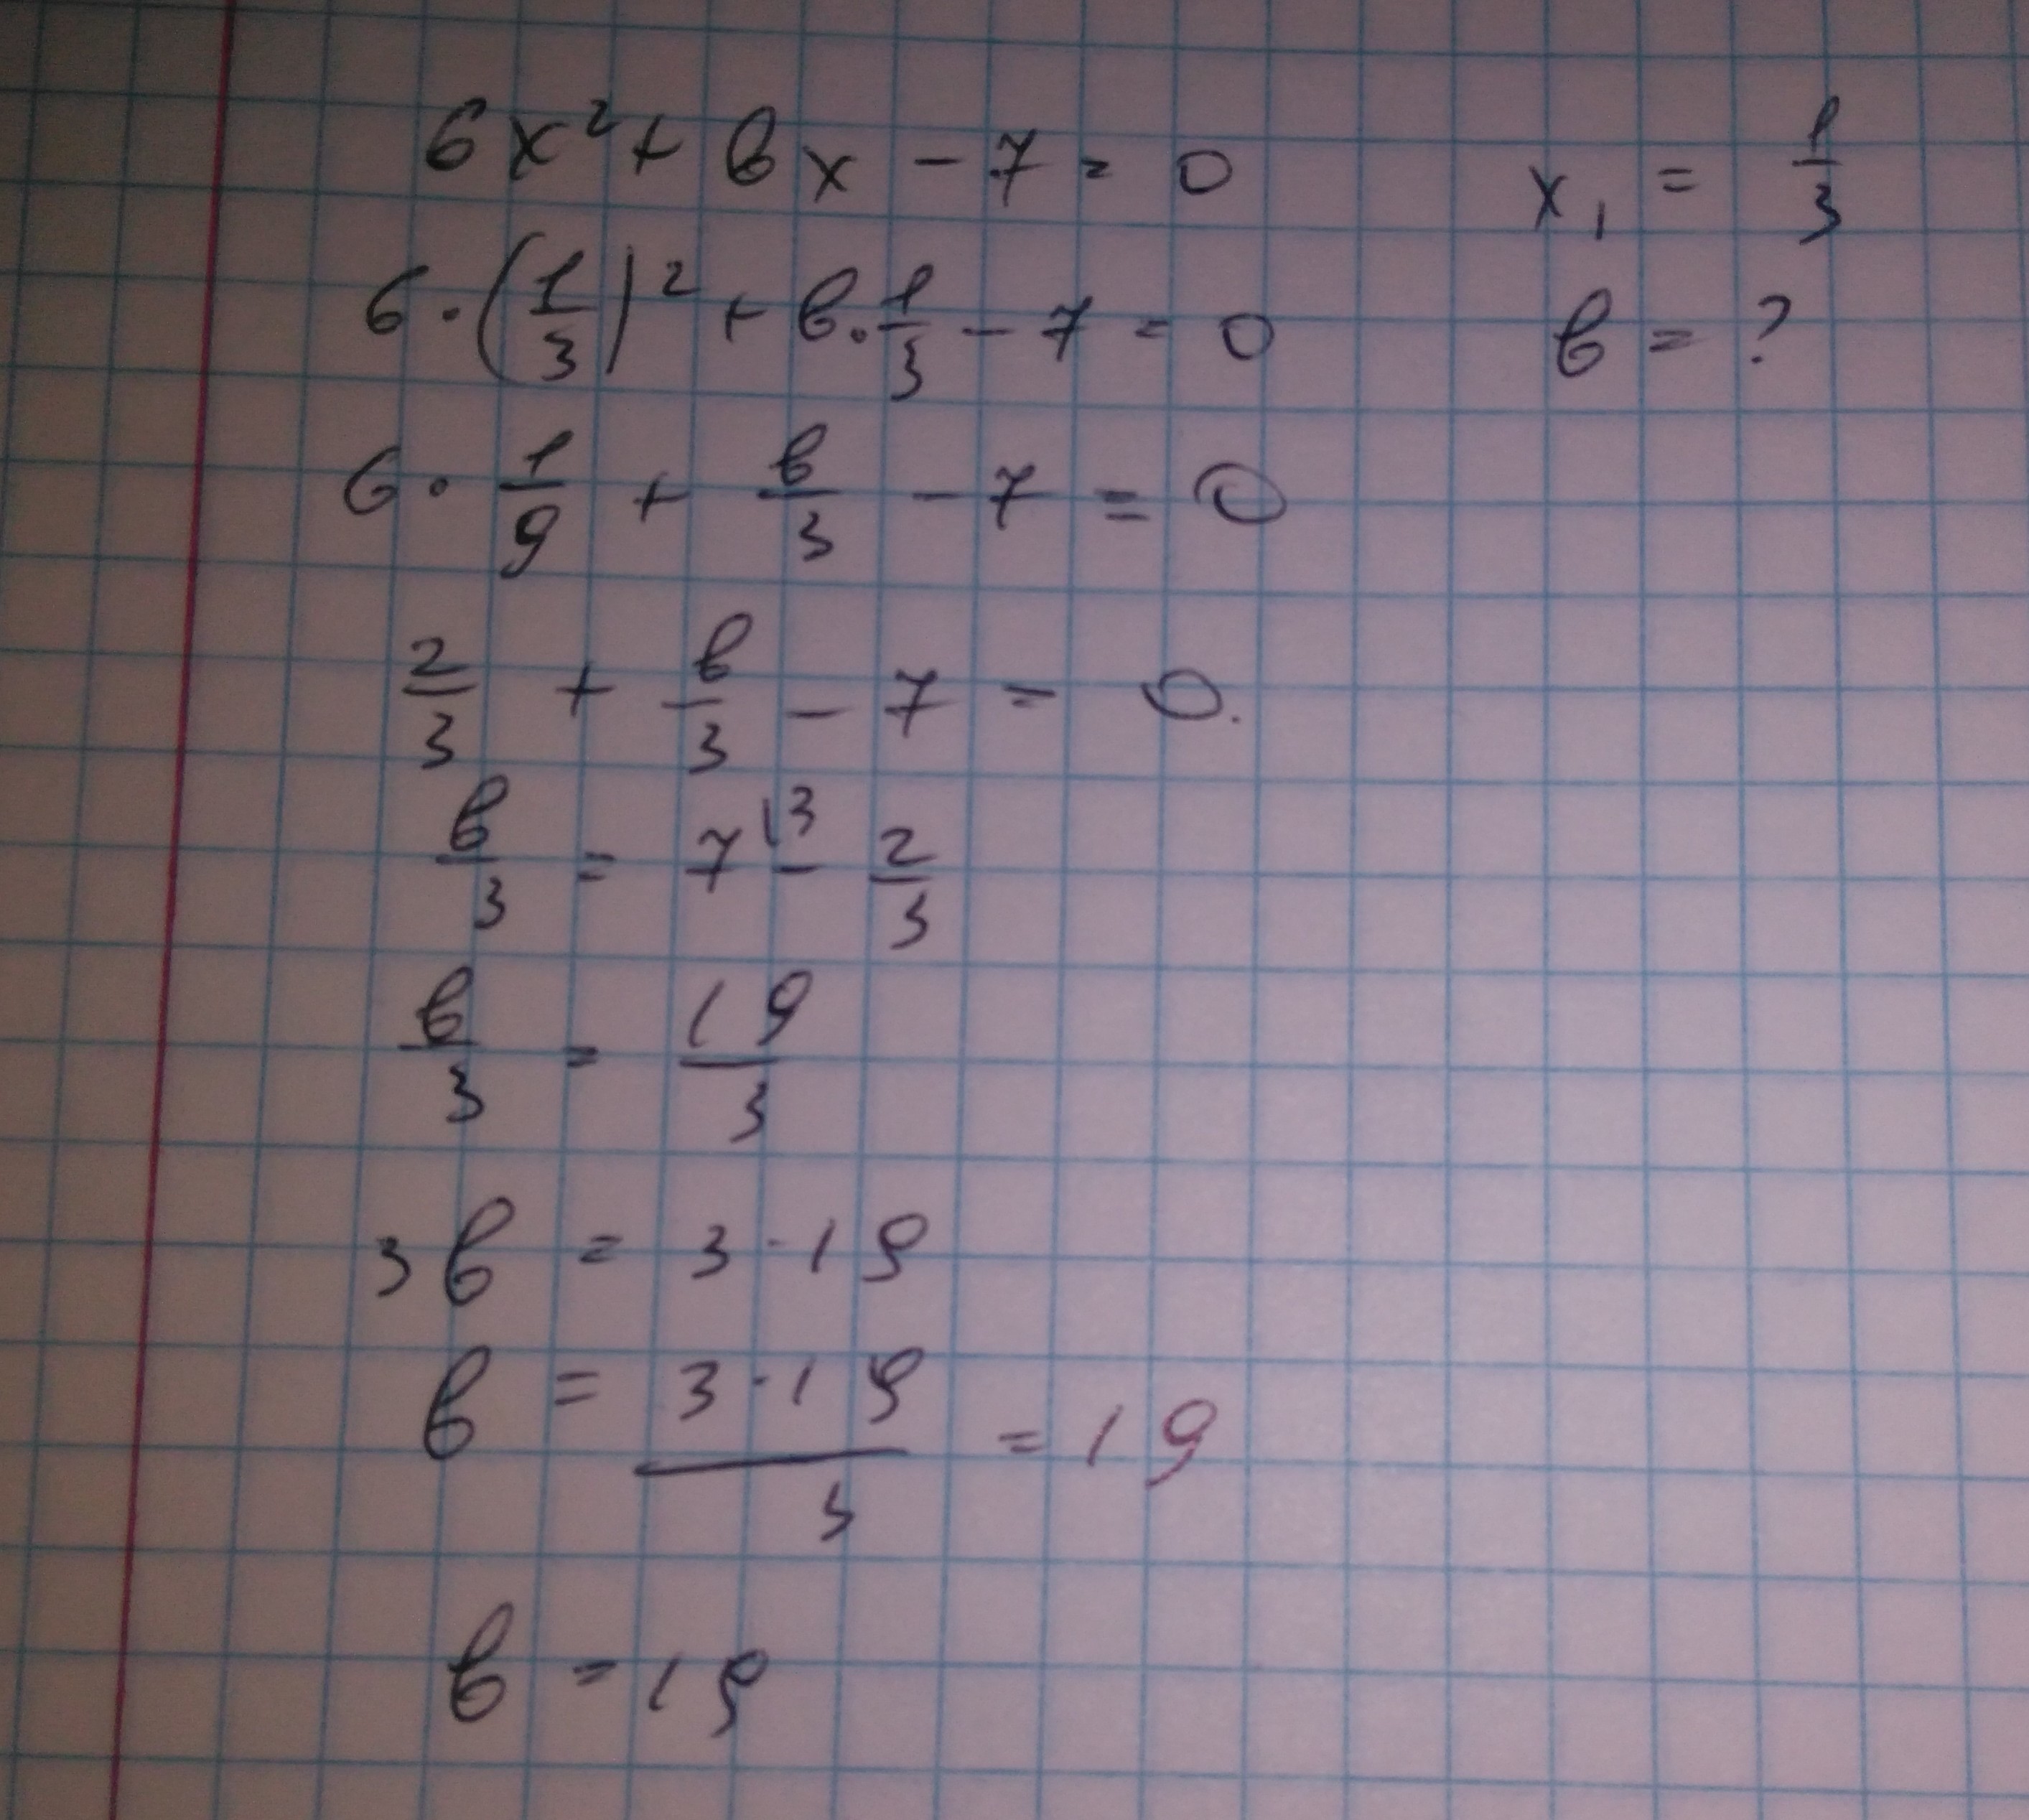 2x 7 6 1 найдите корень уравнения. Число -6 является корнем уравнения 2x+BX-6. Число -6 является корнем уравнения 2x+BX-6 0 Найдите. Число 0 6 является корнем уравнения. Число 4 является корнем уравнения 3x+BX+4.